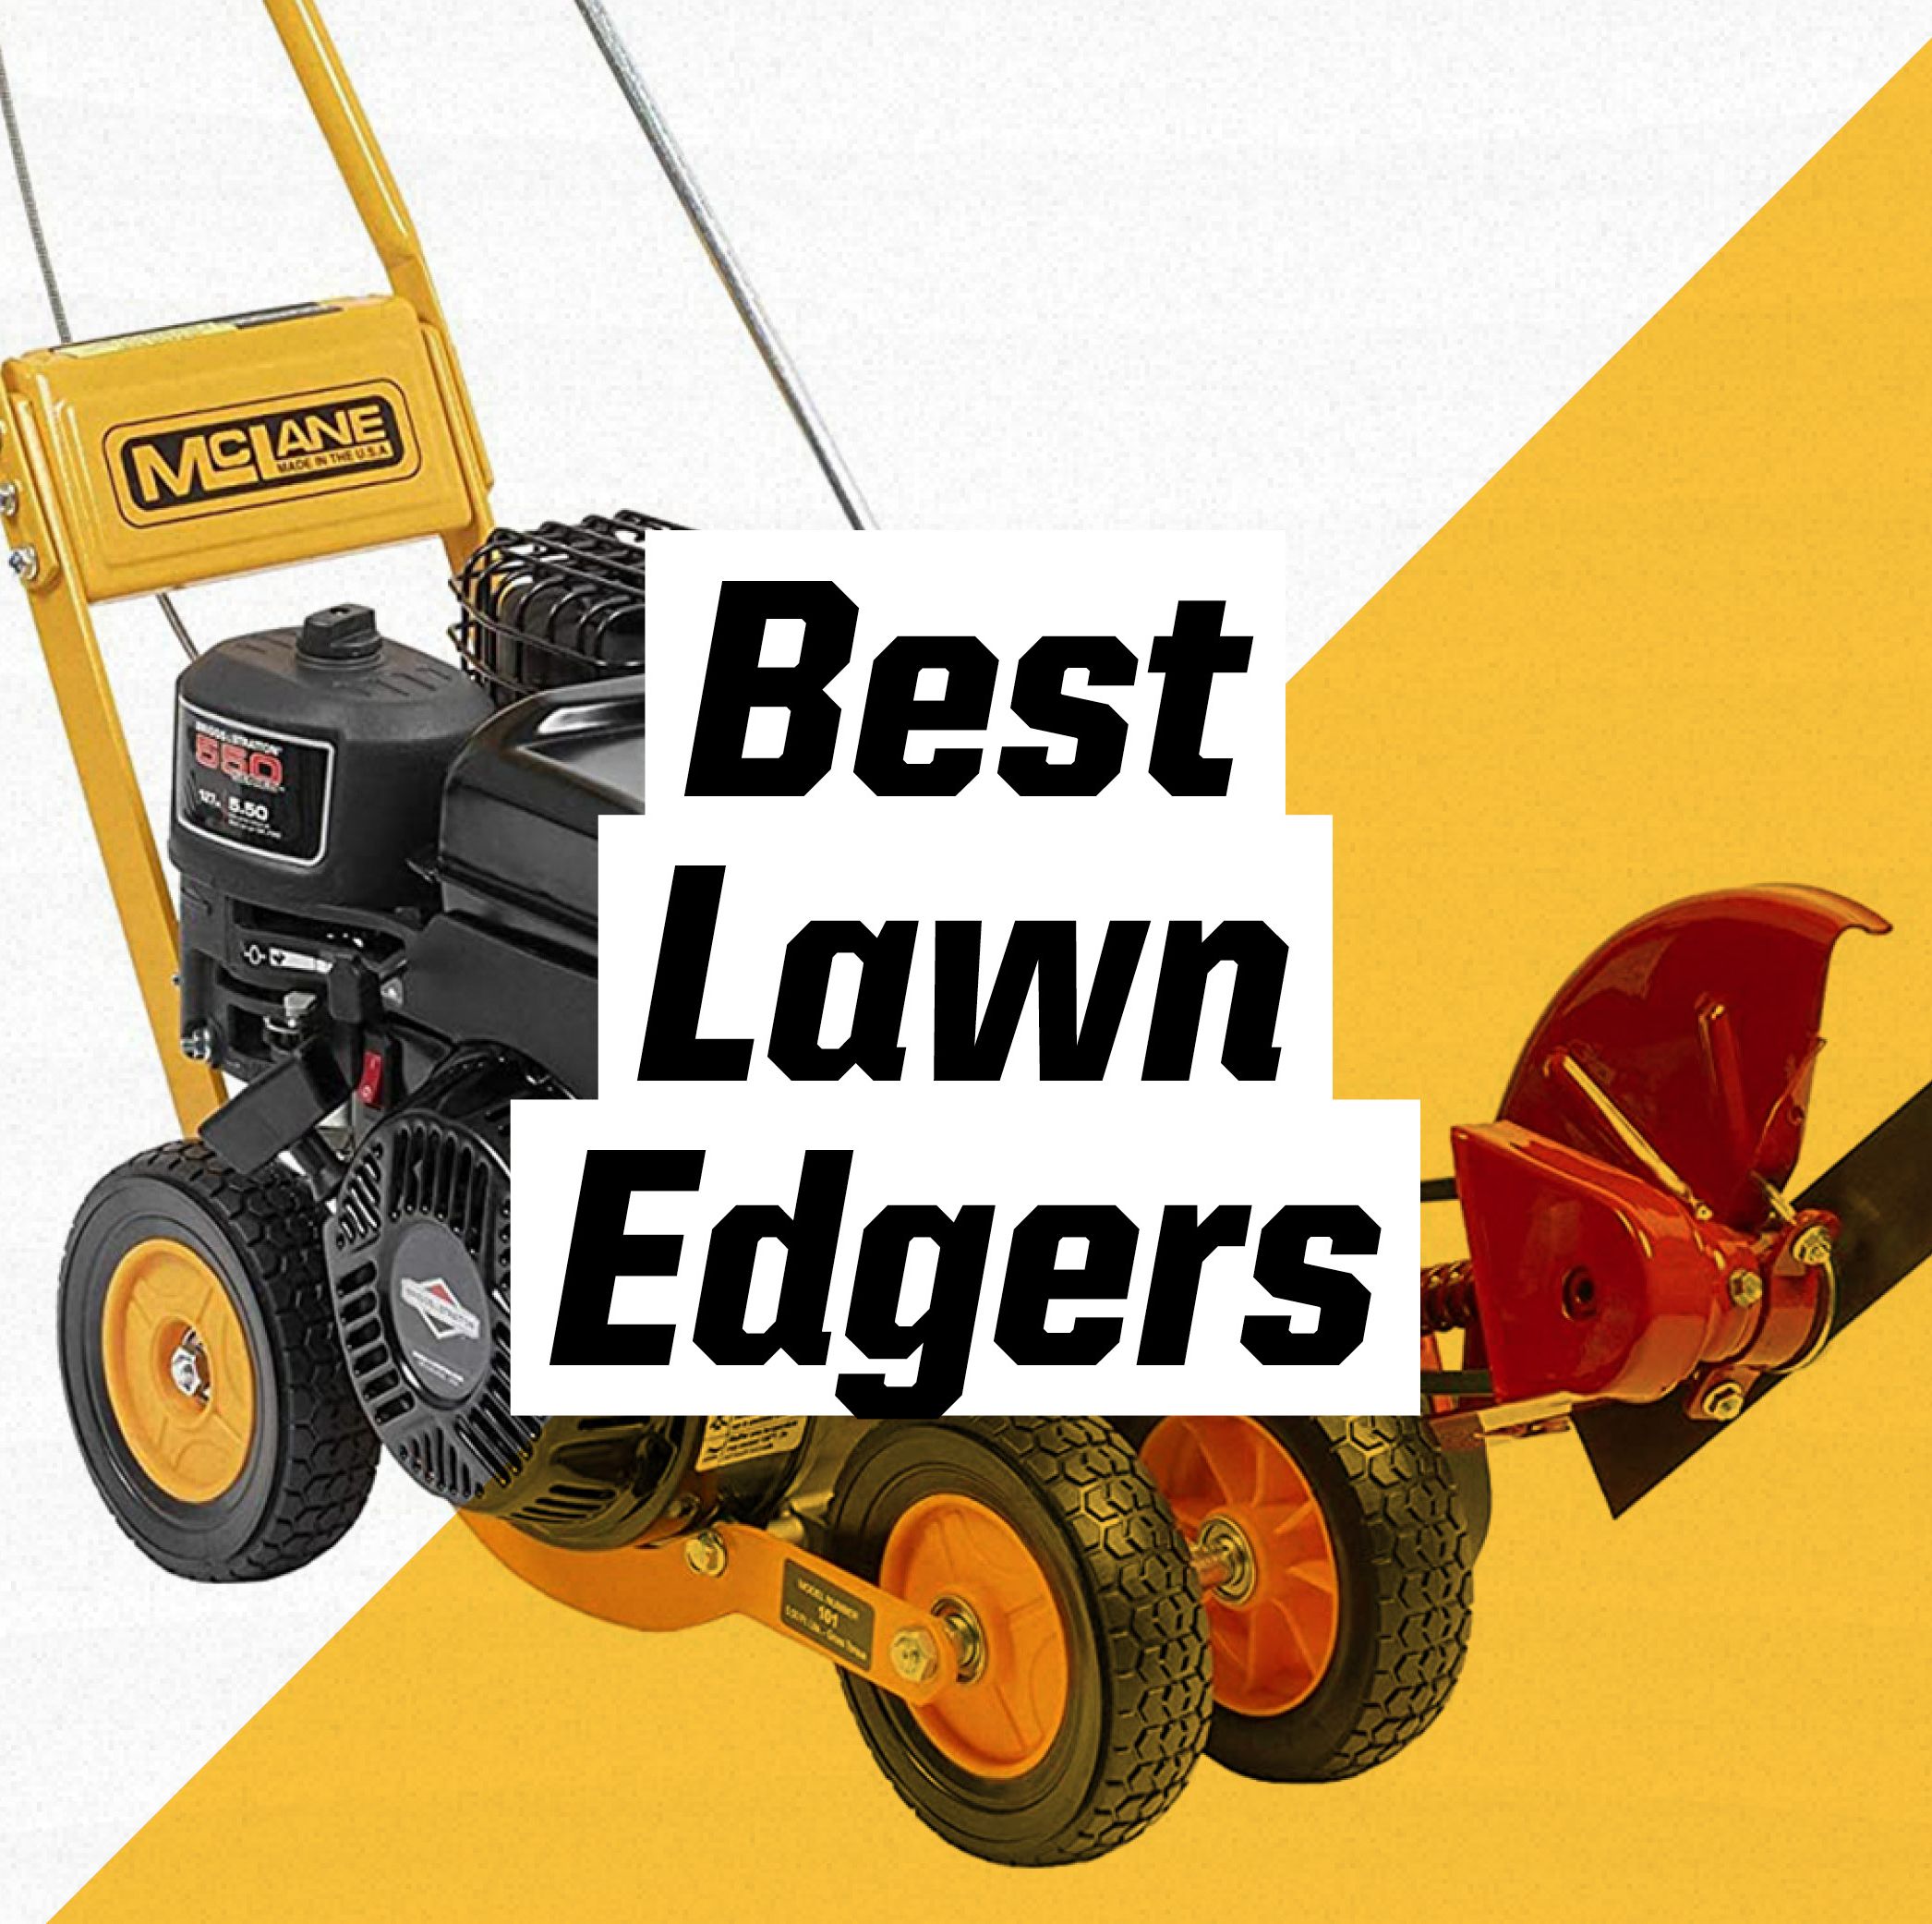 The Best Lawn Edgers for a Crisp Landscape